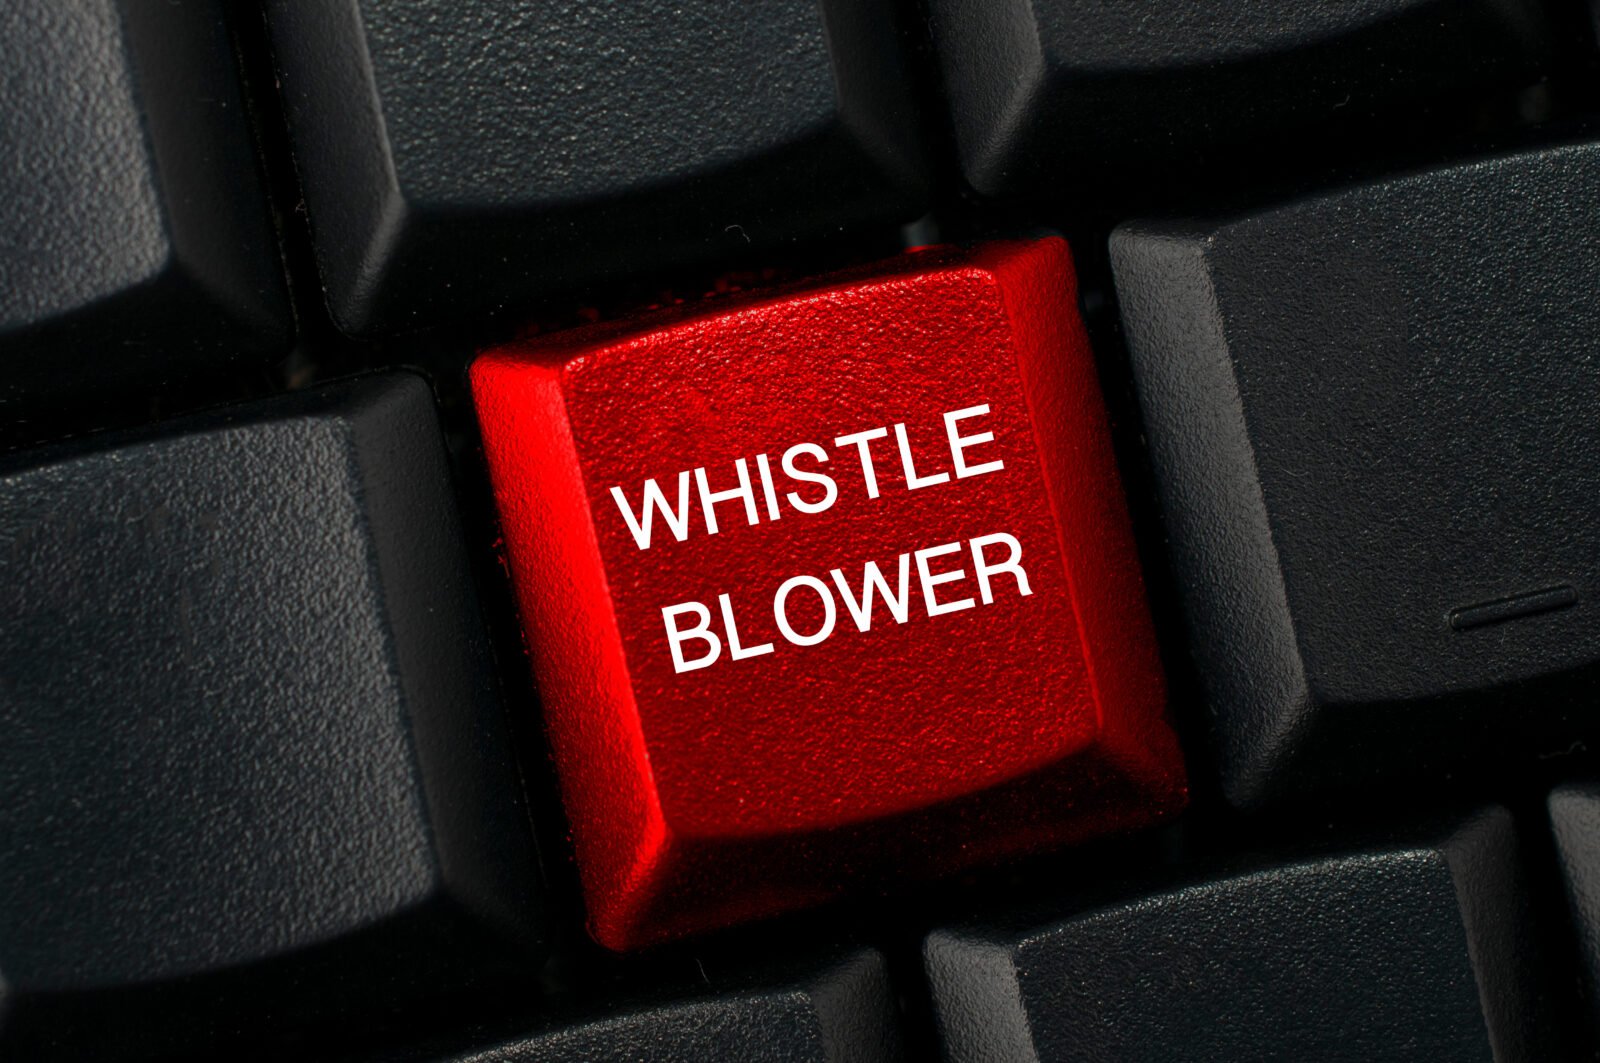 sec whistleblower program